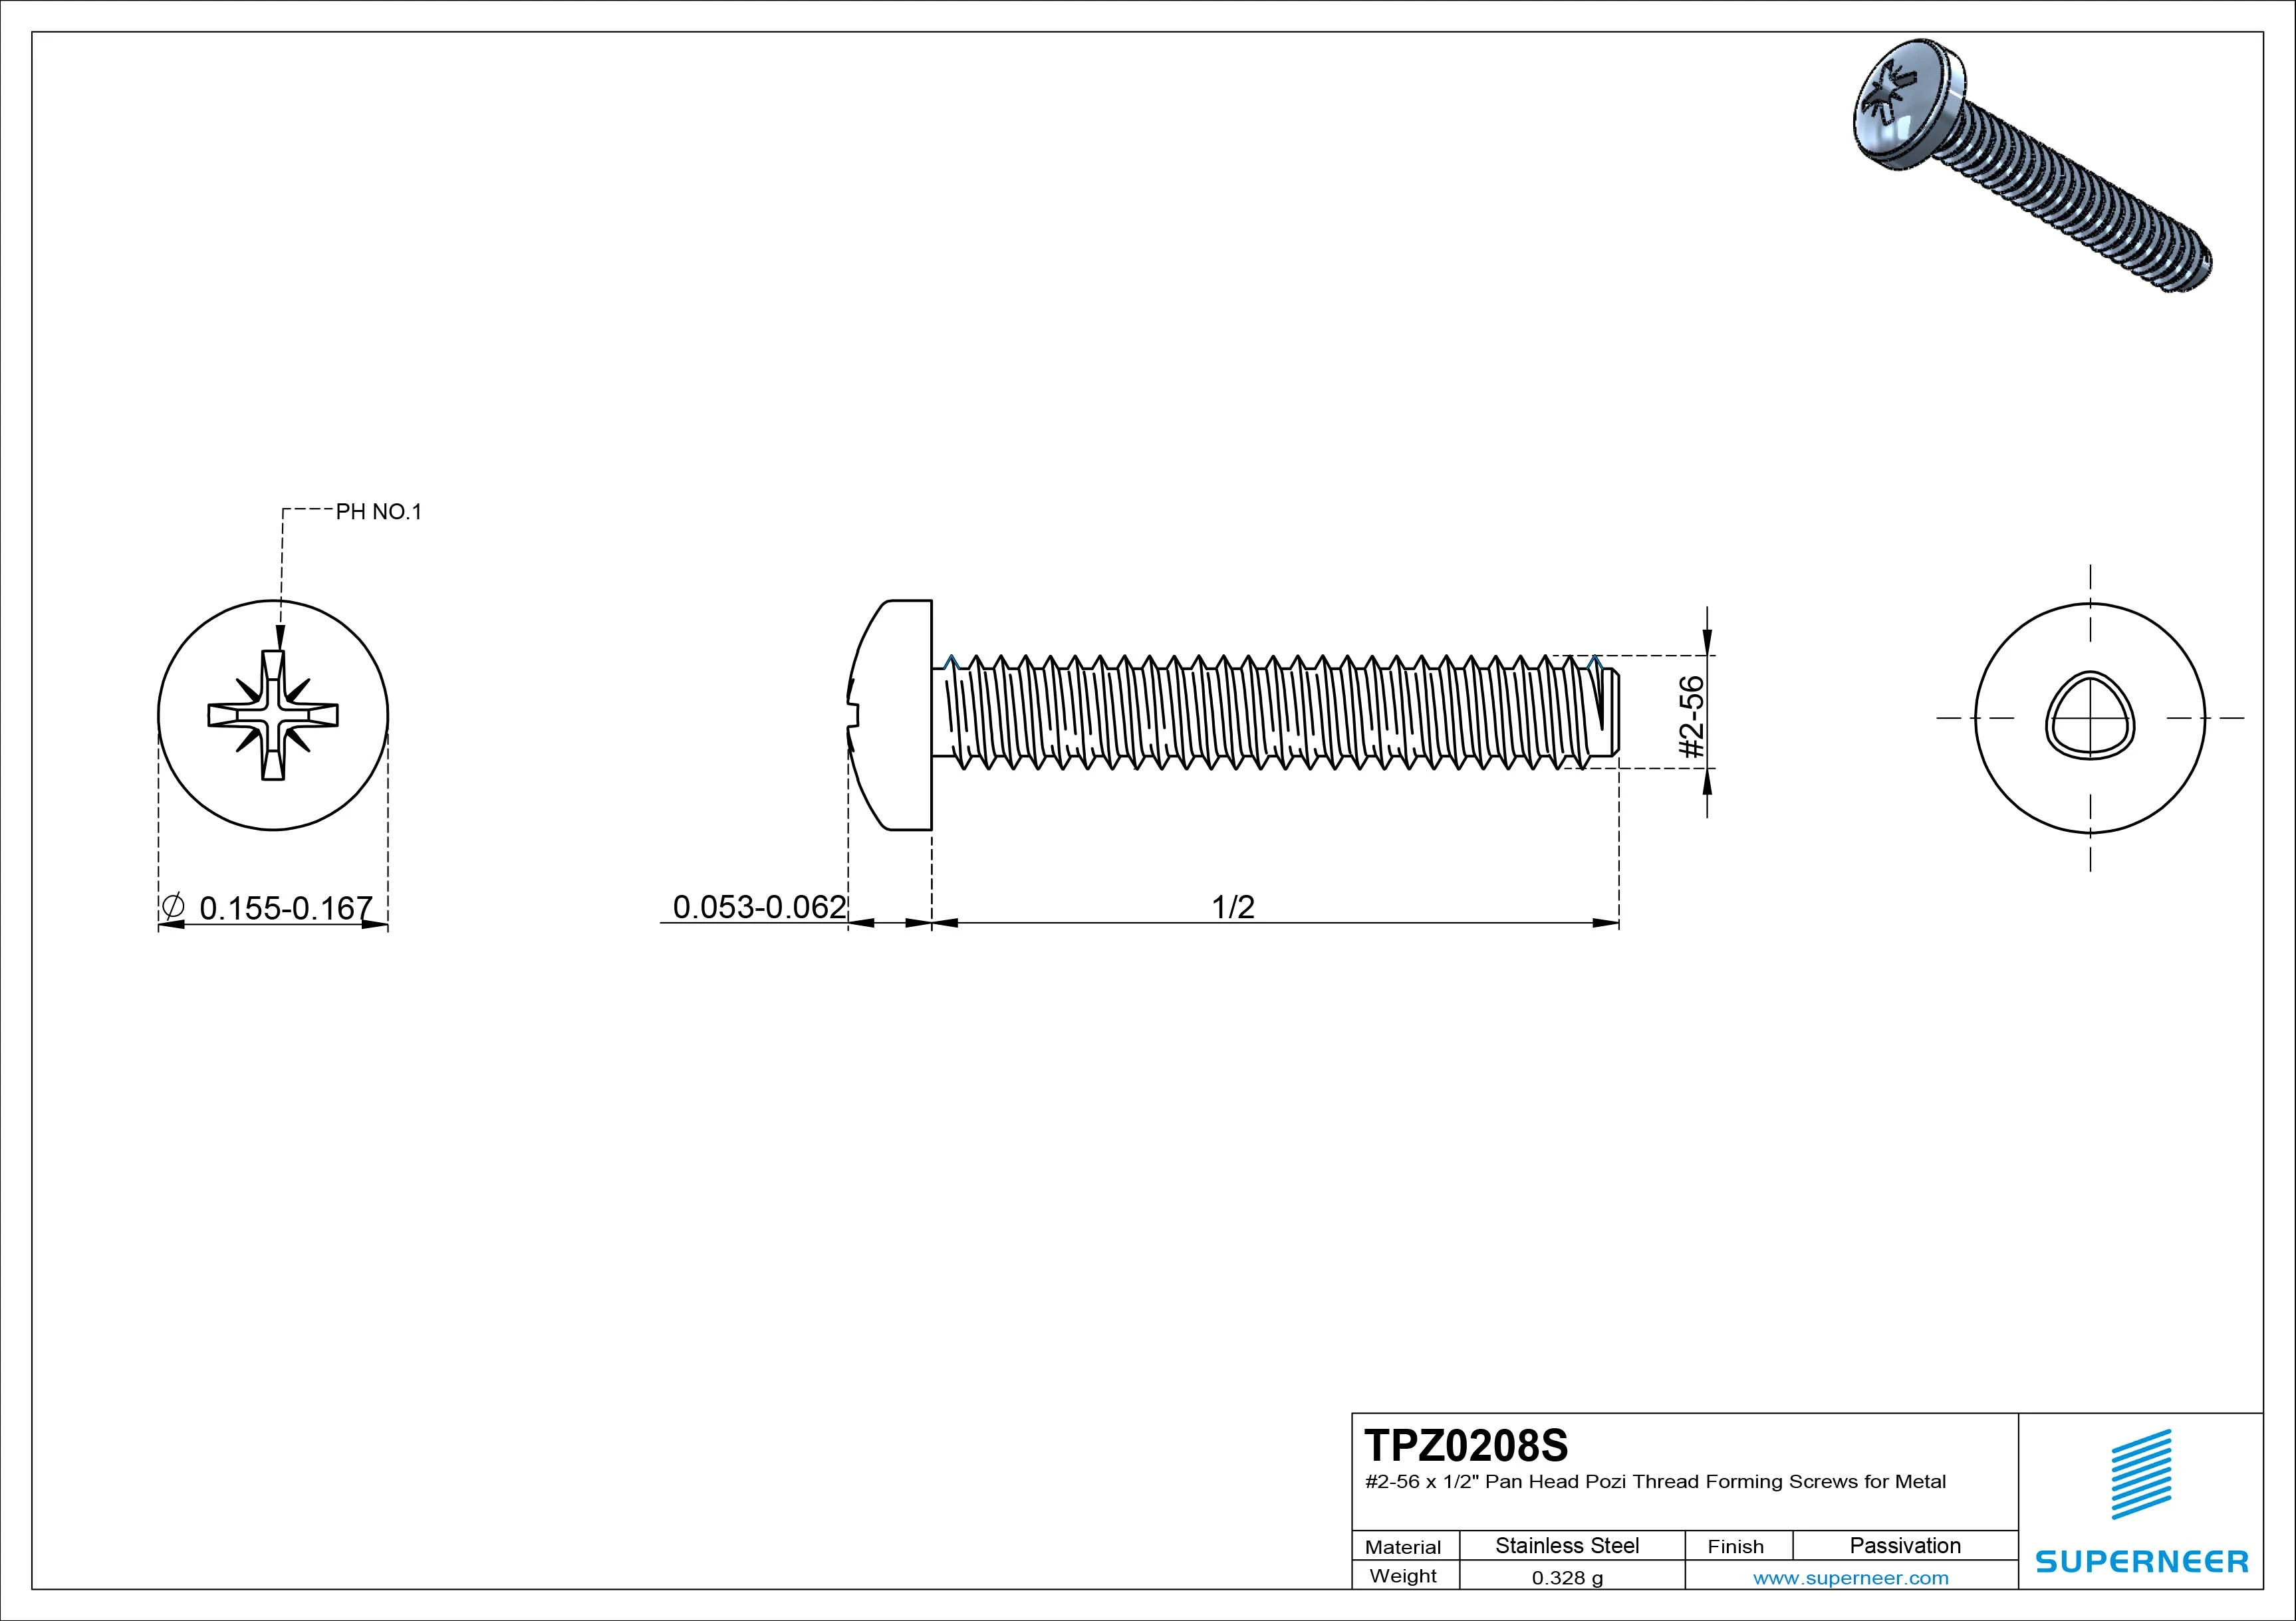 2-56 × 1/2 Pan Head Pozi Thread Forming  Screws for Metal  SUS304 Stainless Steel Inox